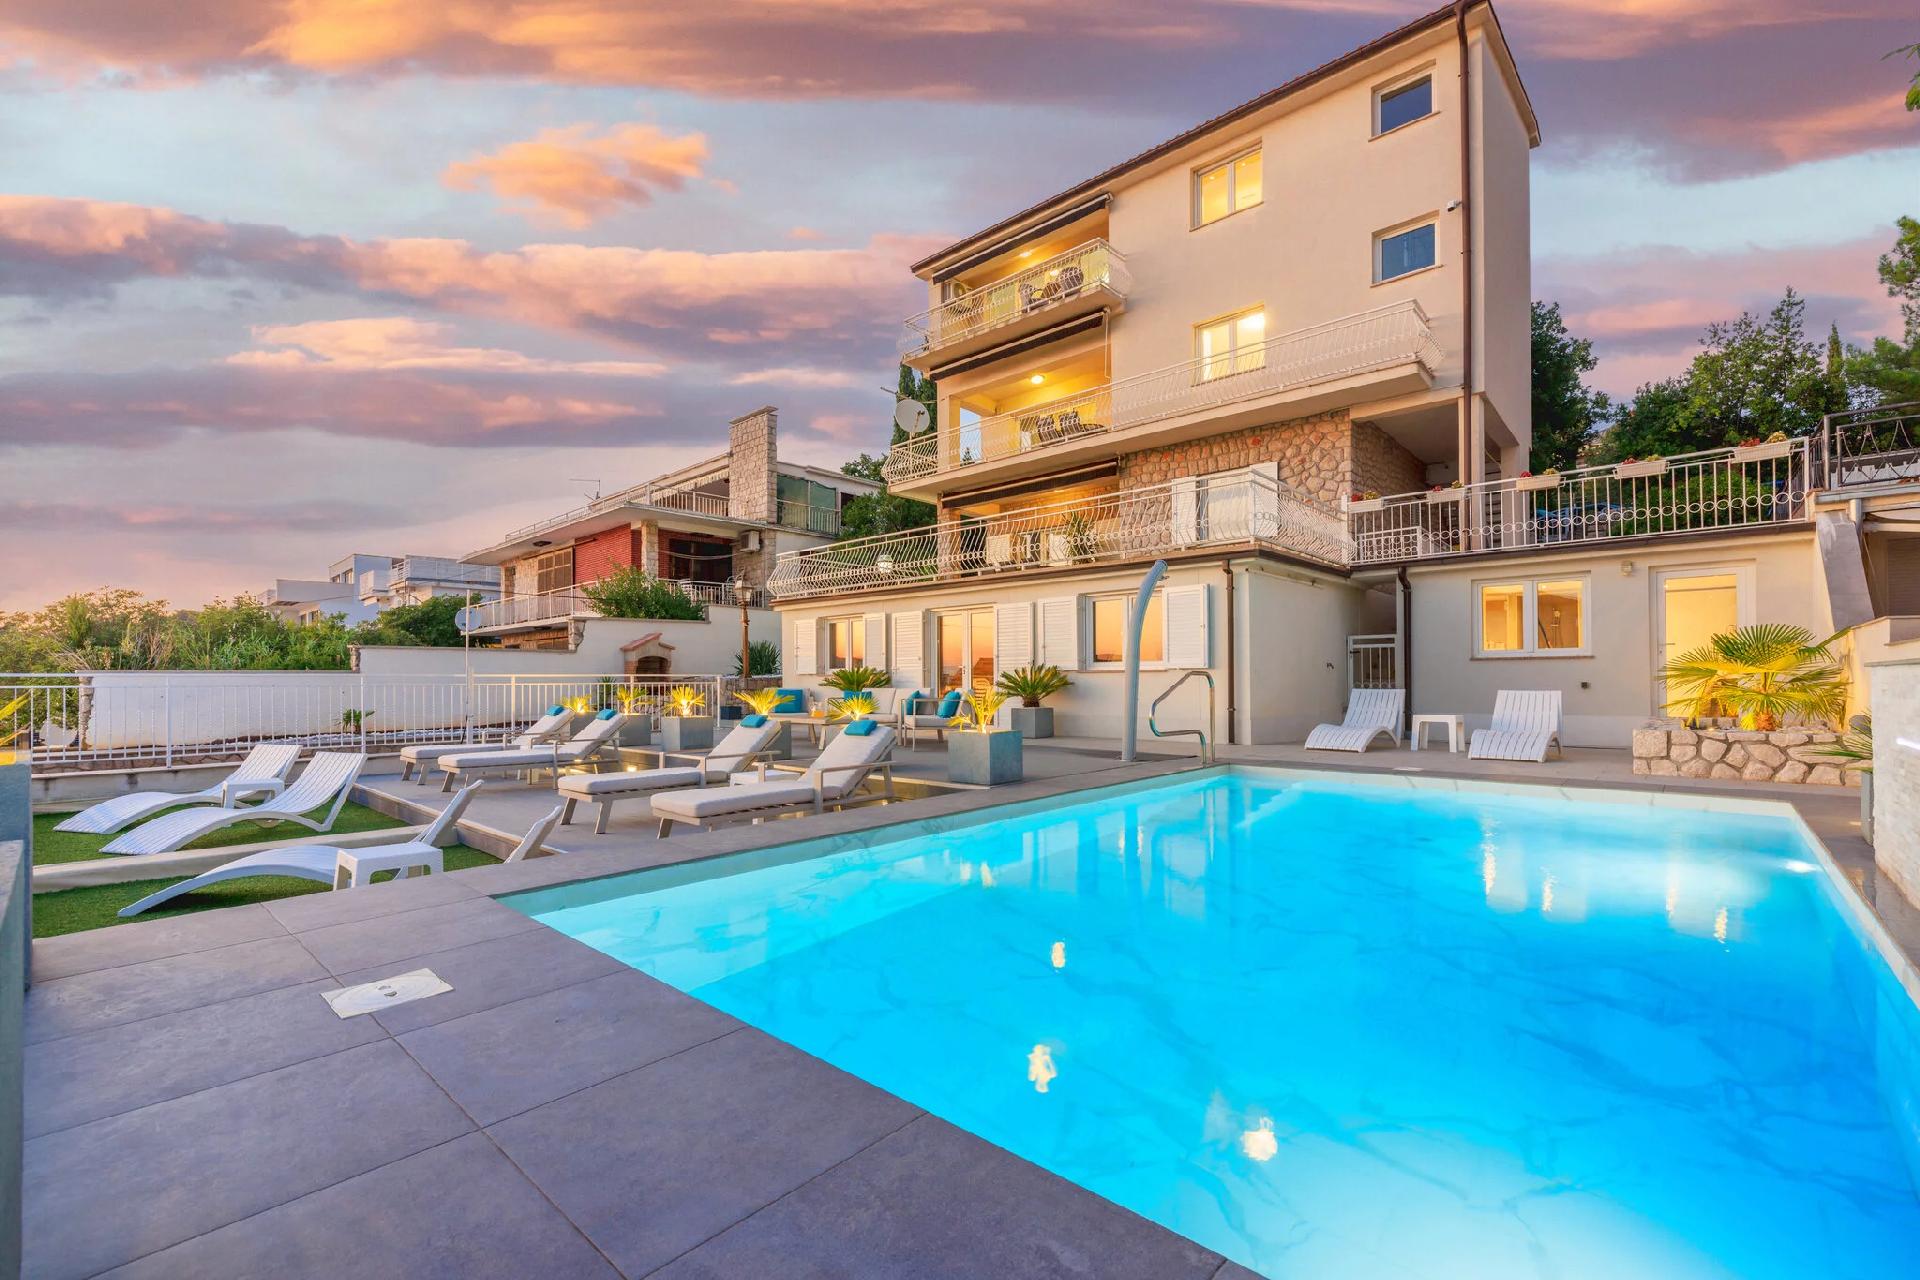 Ferienwohnung für 5 Personen ca. 82 m² i  in Kroatien